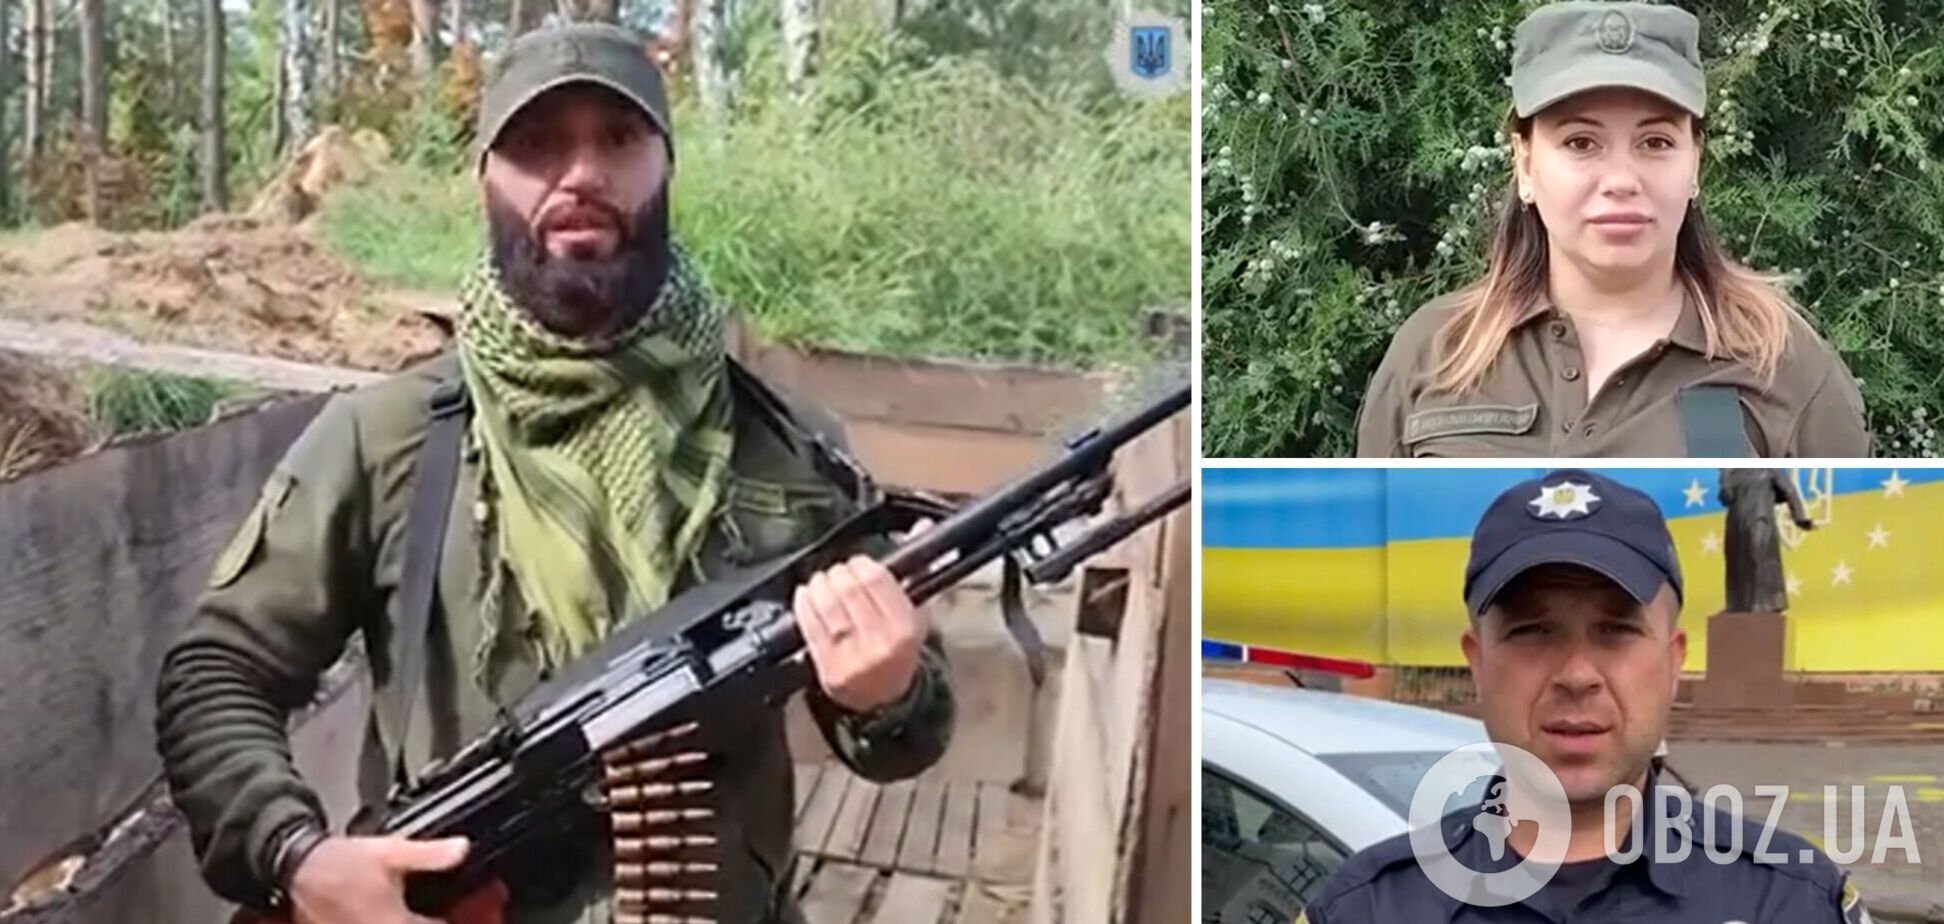 Мы все – украинцы! Сотрудники системы МВД разных национальностей записали трогательное видео в поддержку народа Украины